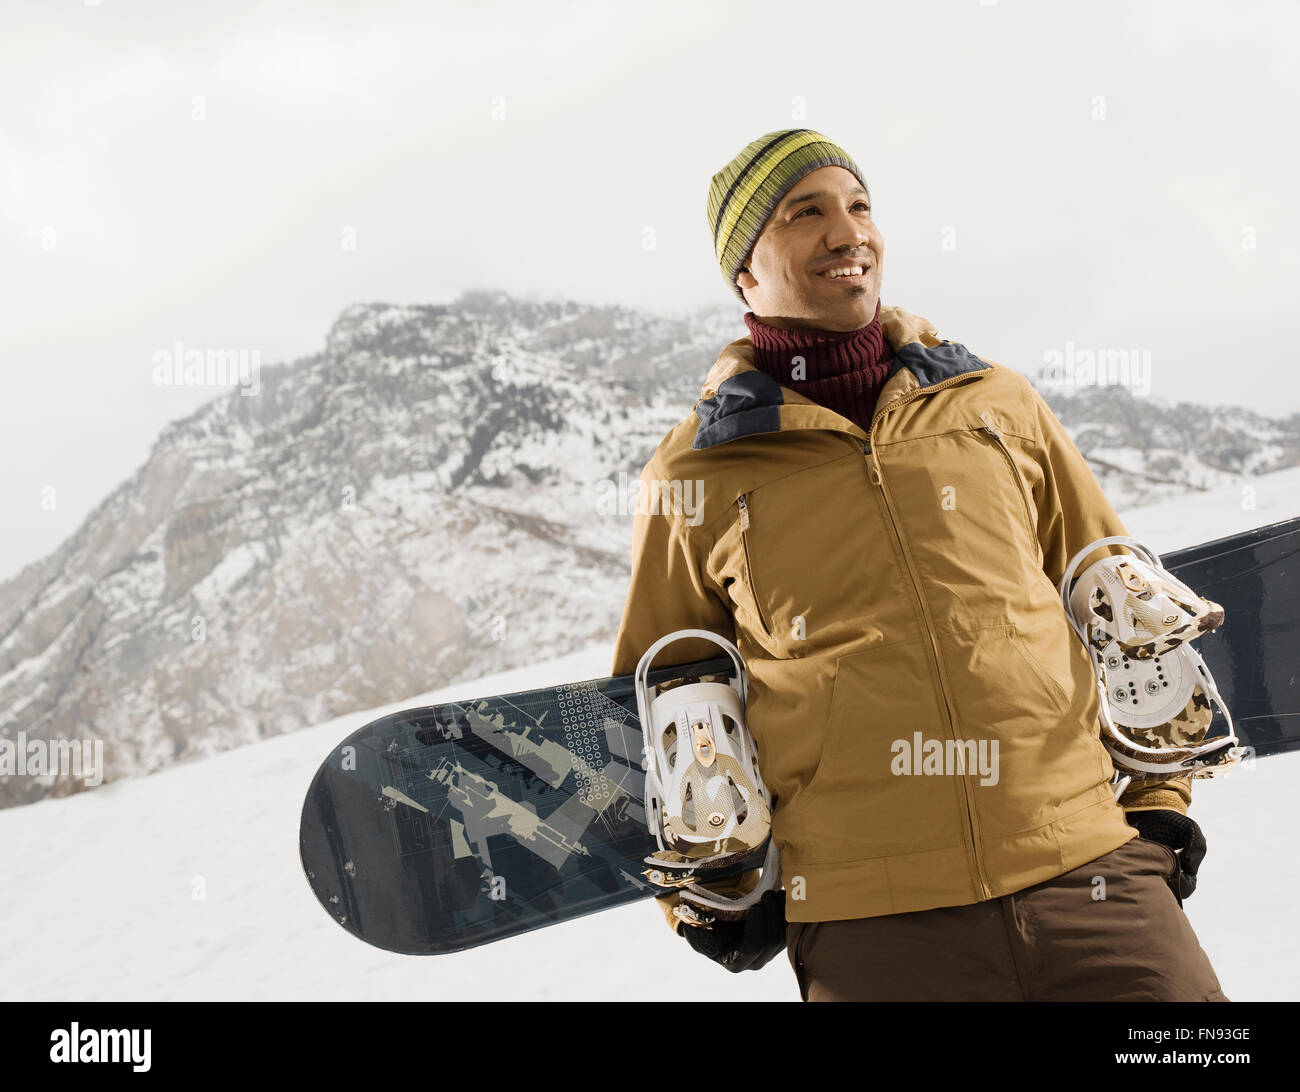 Un homme dans les montagnes portant un snowboard. Banque D'Images